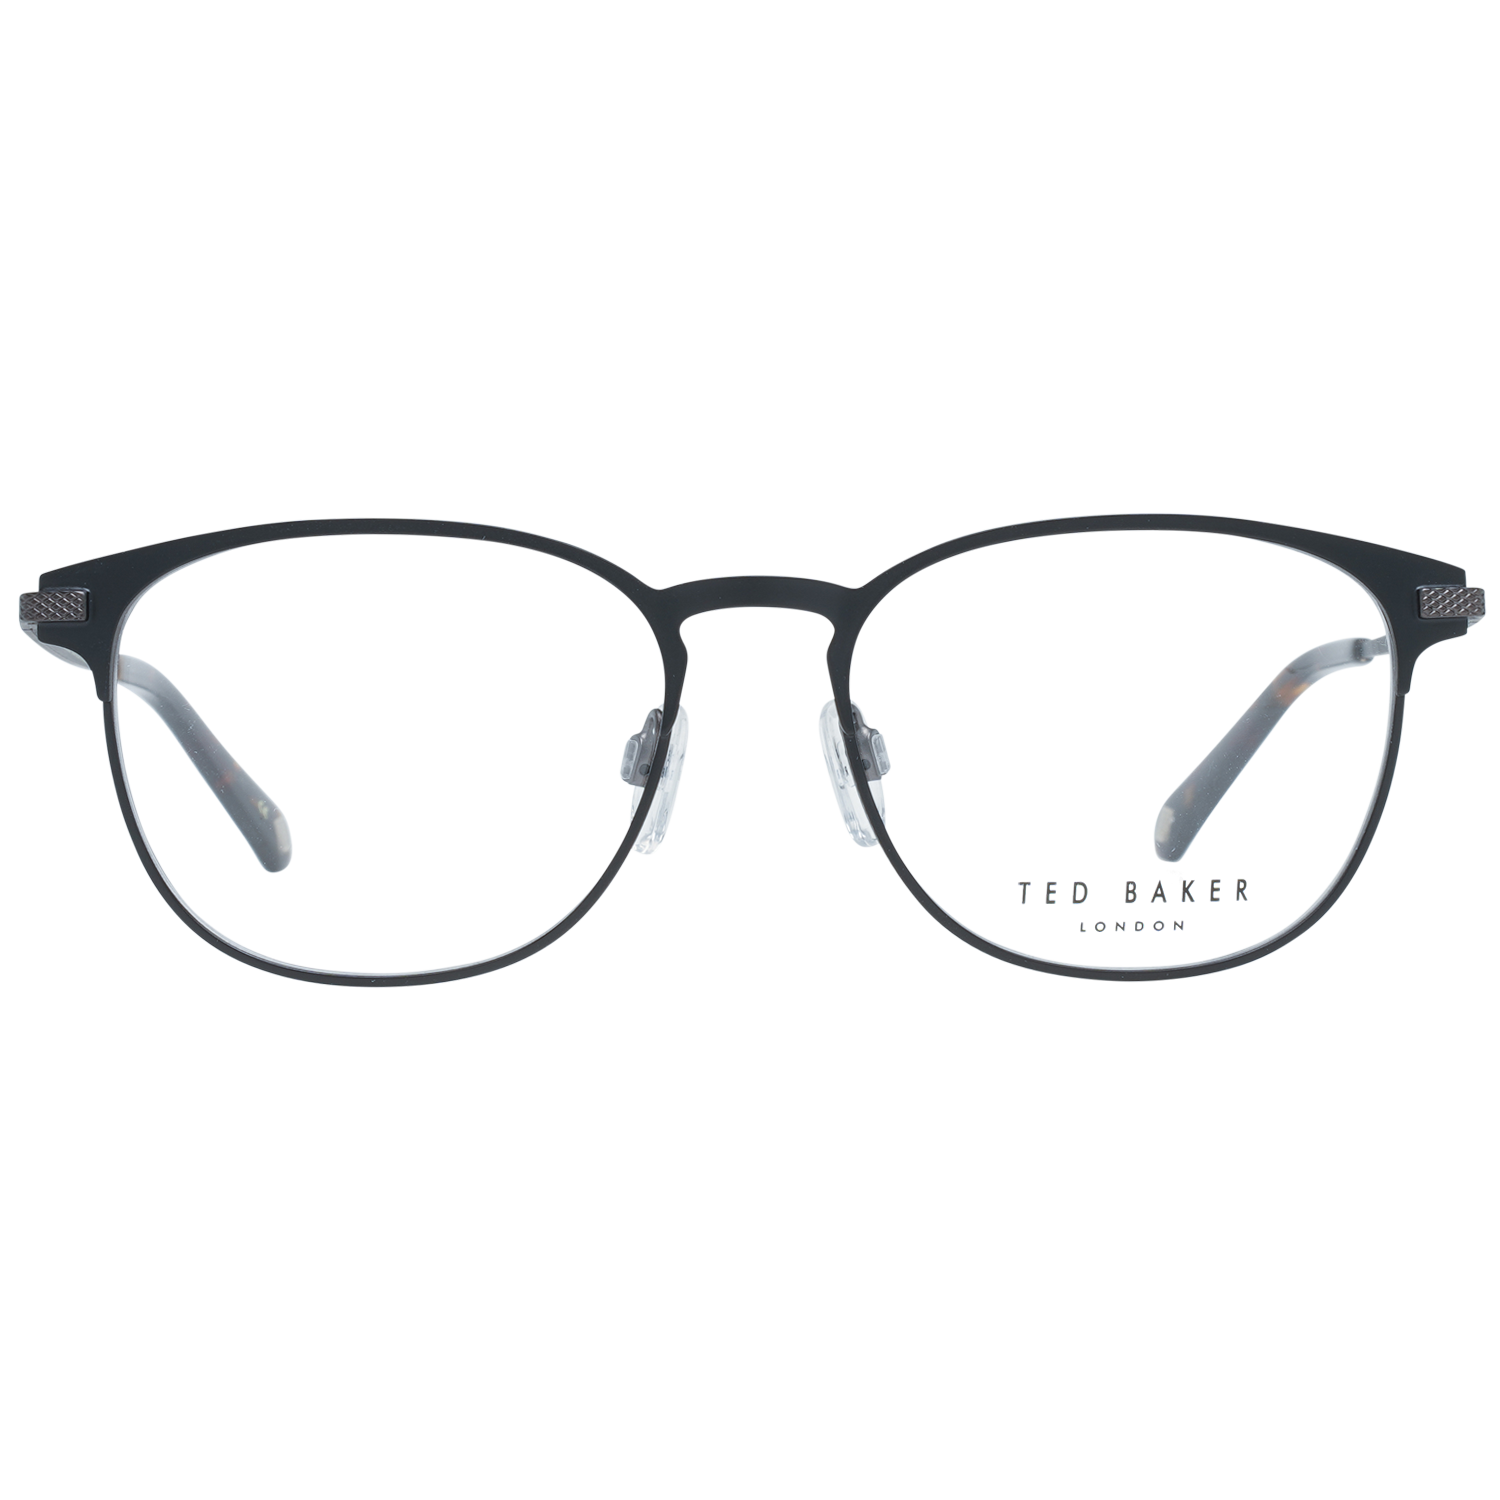 Ted Baker Frames Ted Baker Optical Frame Prescription Glasses TB4261 001 52 Kendrick Eyeglasses Eyewear UK USA Australia 